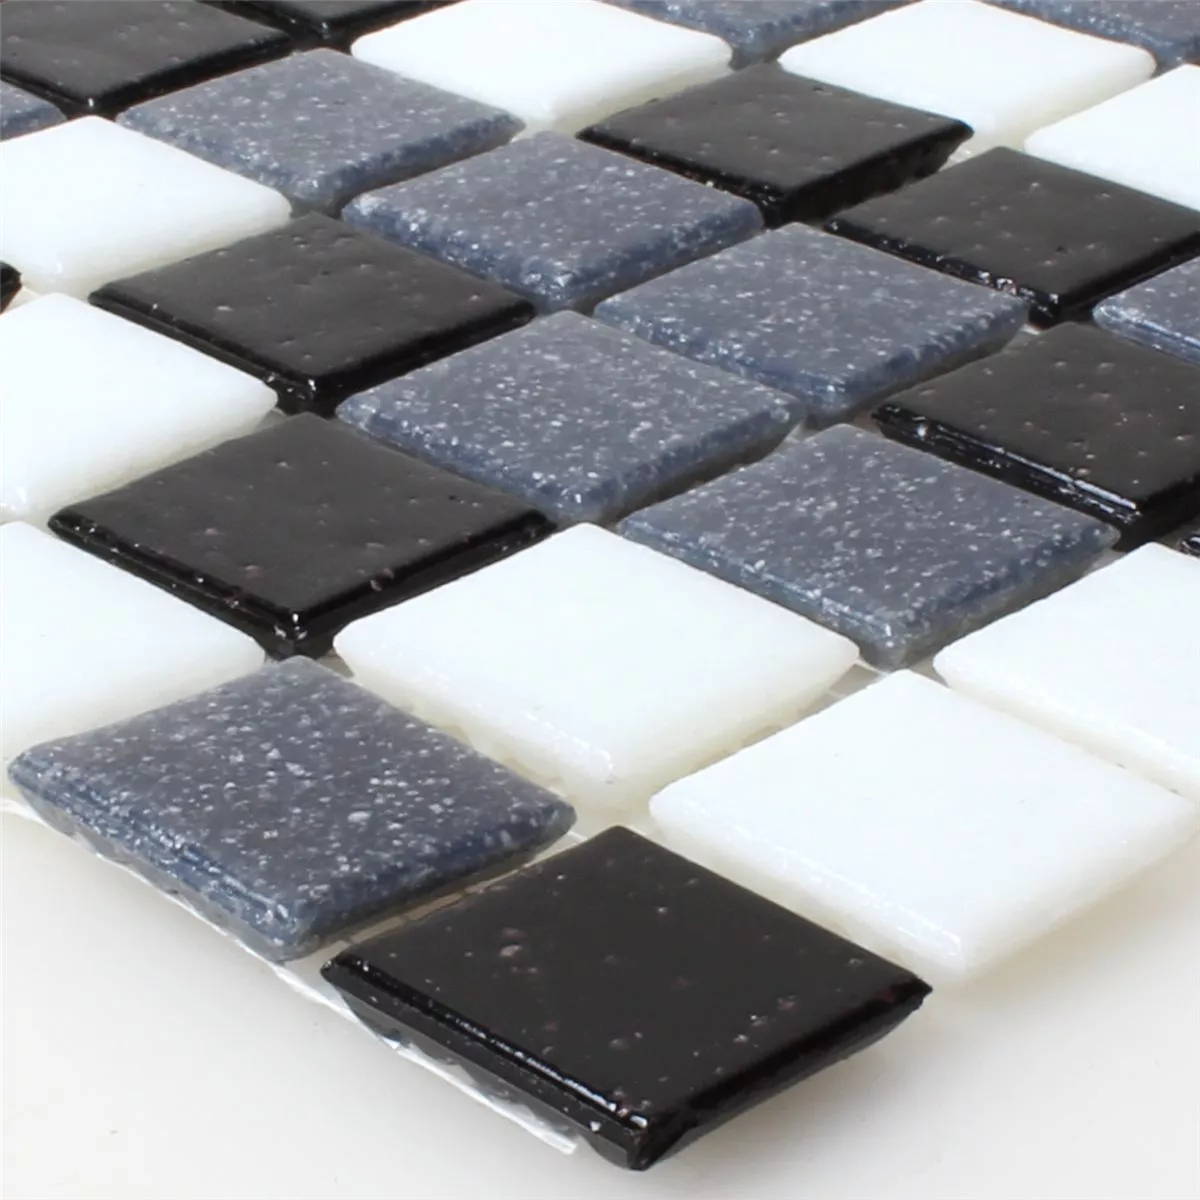 Muster von Mosaikfliesen Glas Weiss Grau Schwarz Mix